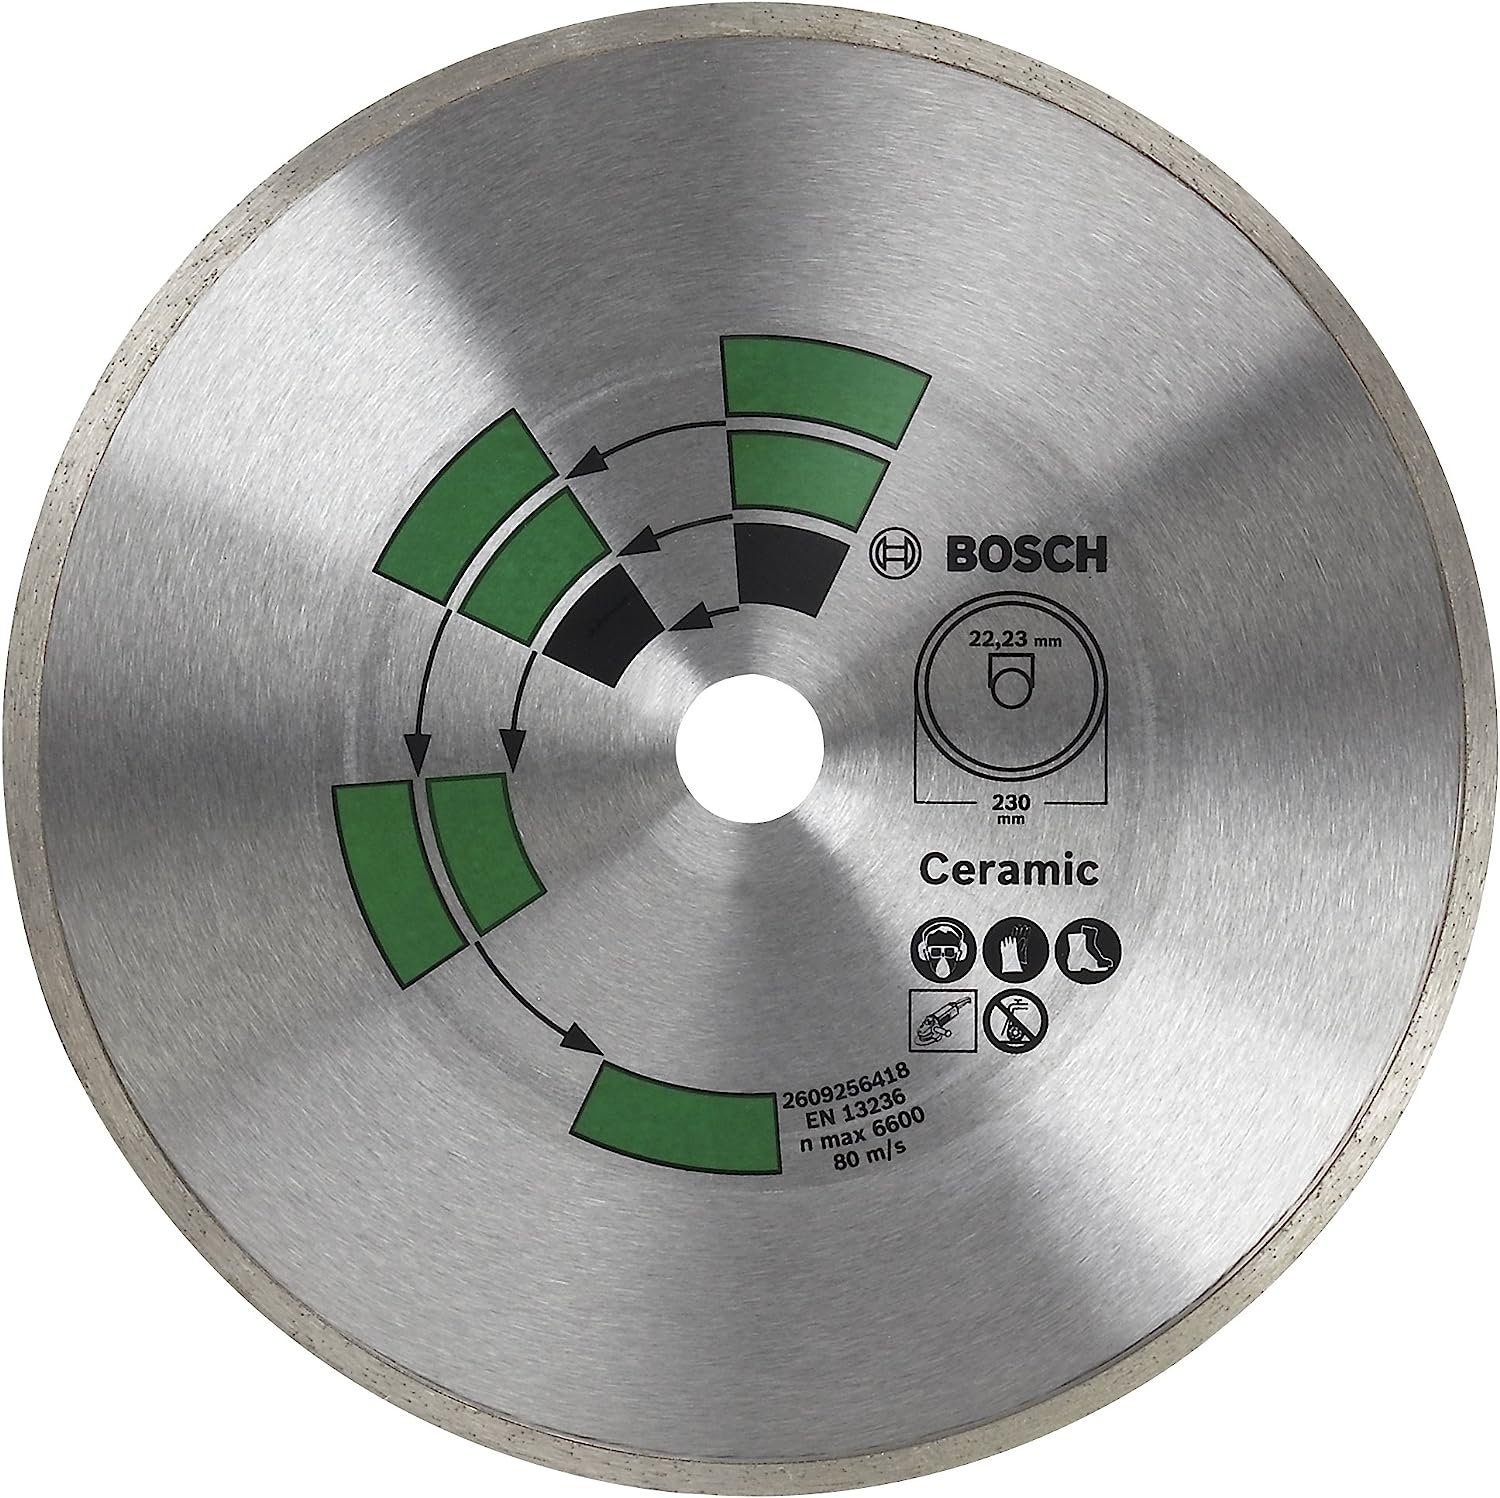 BOSCH Bohrfutter Bosch 125 Fliesen 2609256417 DIY Diamanttrennscheibe Top mm Keramik